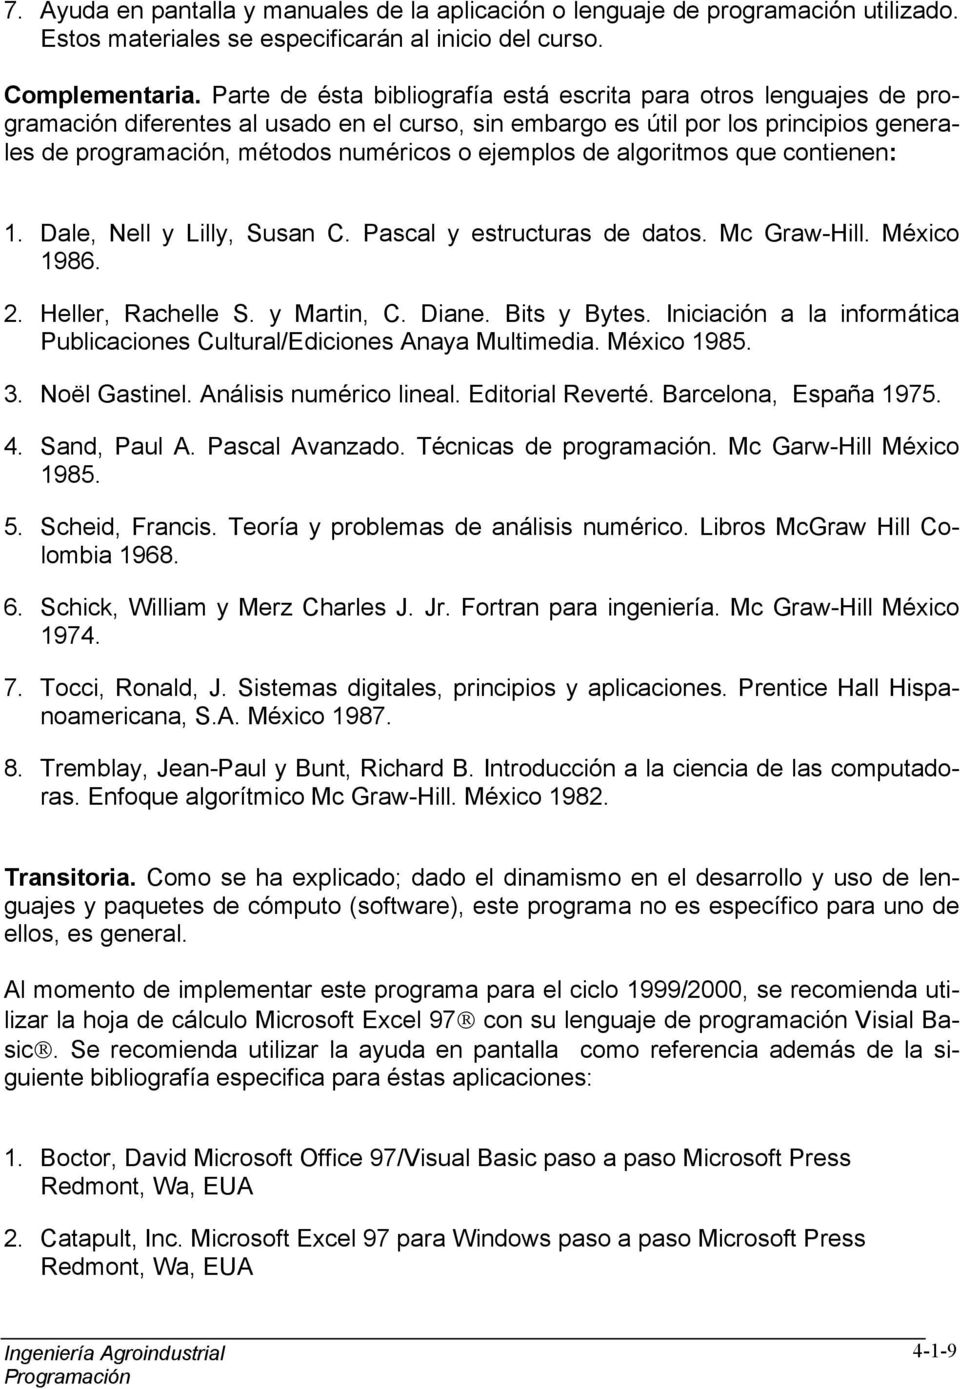 ejemplos de algoritmos que contienen: 1. Dale, Nell y Lilly, Susan C. Pascal y estructuras de datos. Mc Graw-Hill. México 1986. 2. Heller, Rachelle S. y Martin, C. Diane. Bits y Bytes.